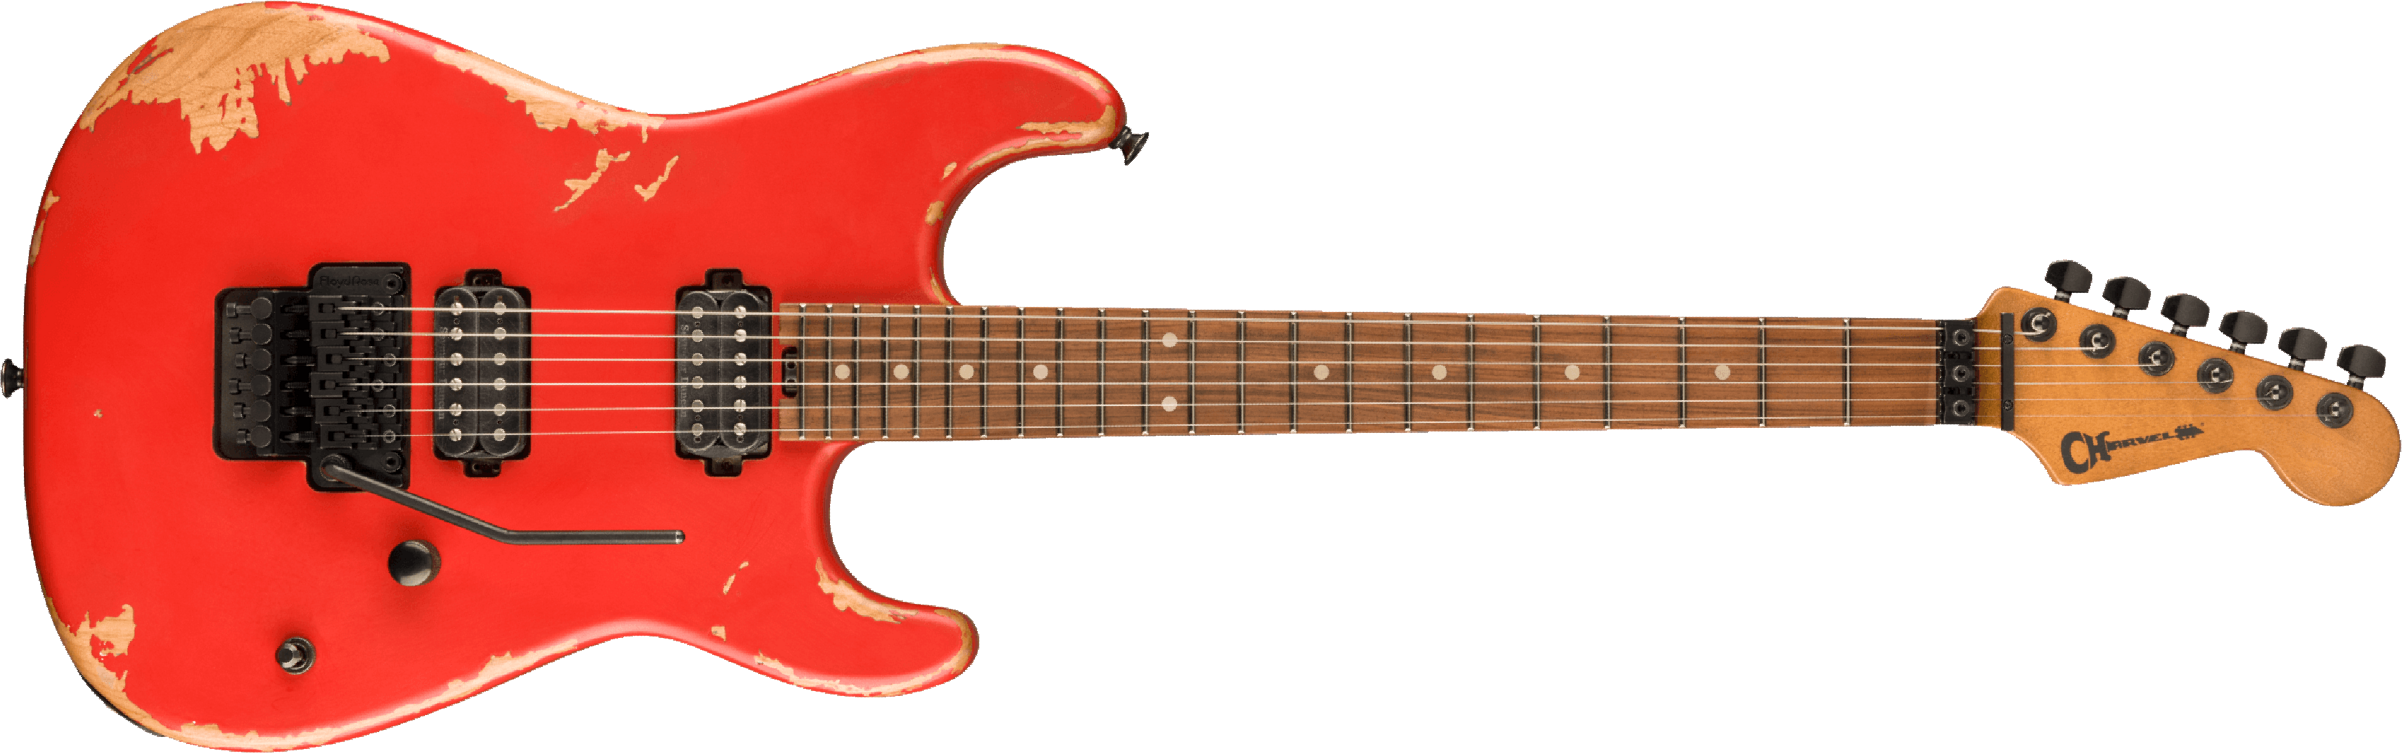 Charvel San Dimas Pro-mod Relic Style 1 Hh Fr E Pf - Weathered Orange - Guitare Électrique Forme Str - Main picture